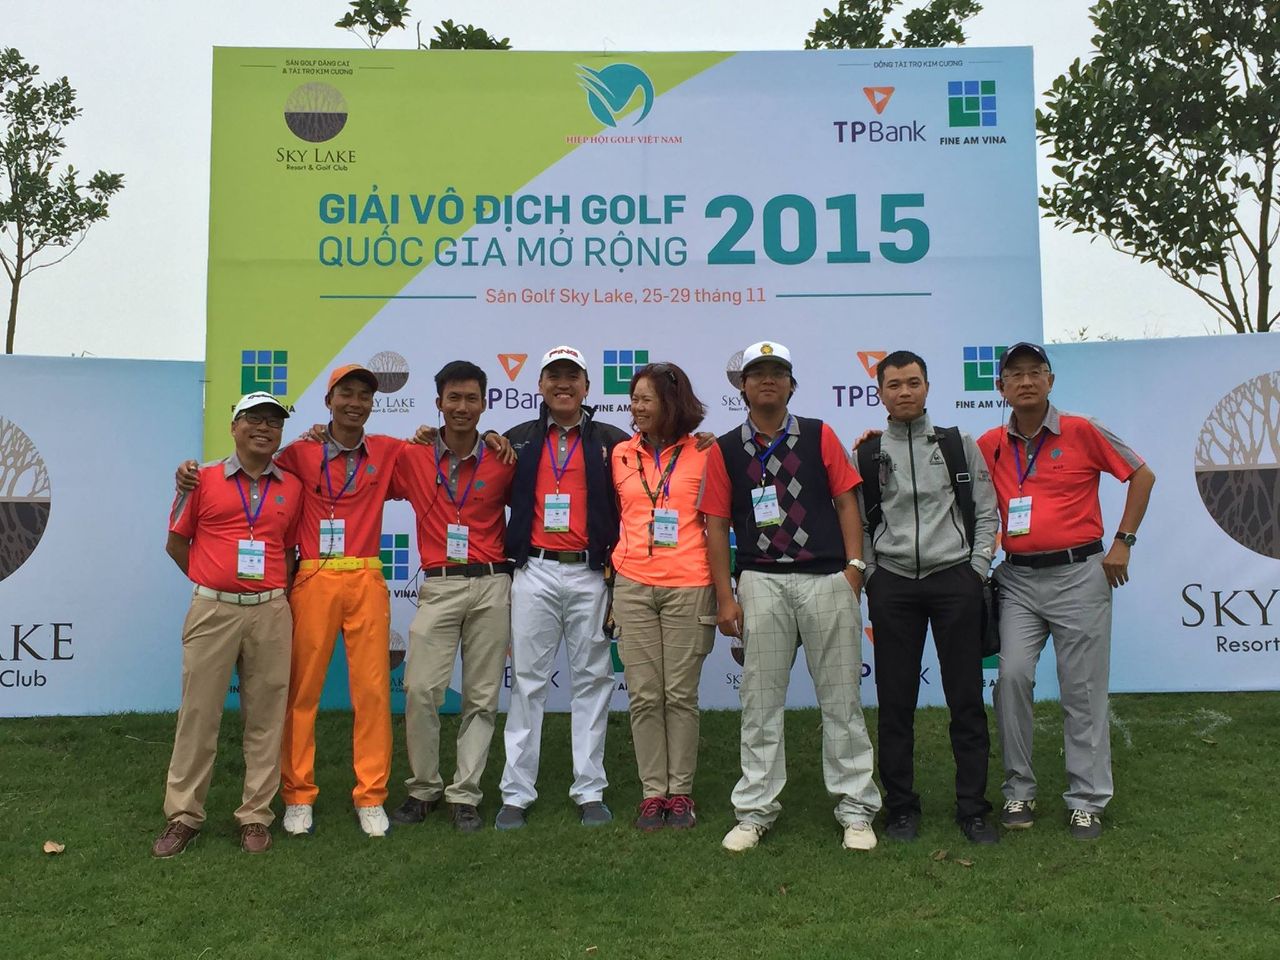 Trọng tài golf ở Việt Nam: Bước chuyển mình quan trọng (p3)